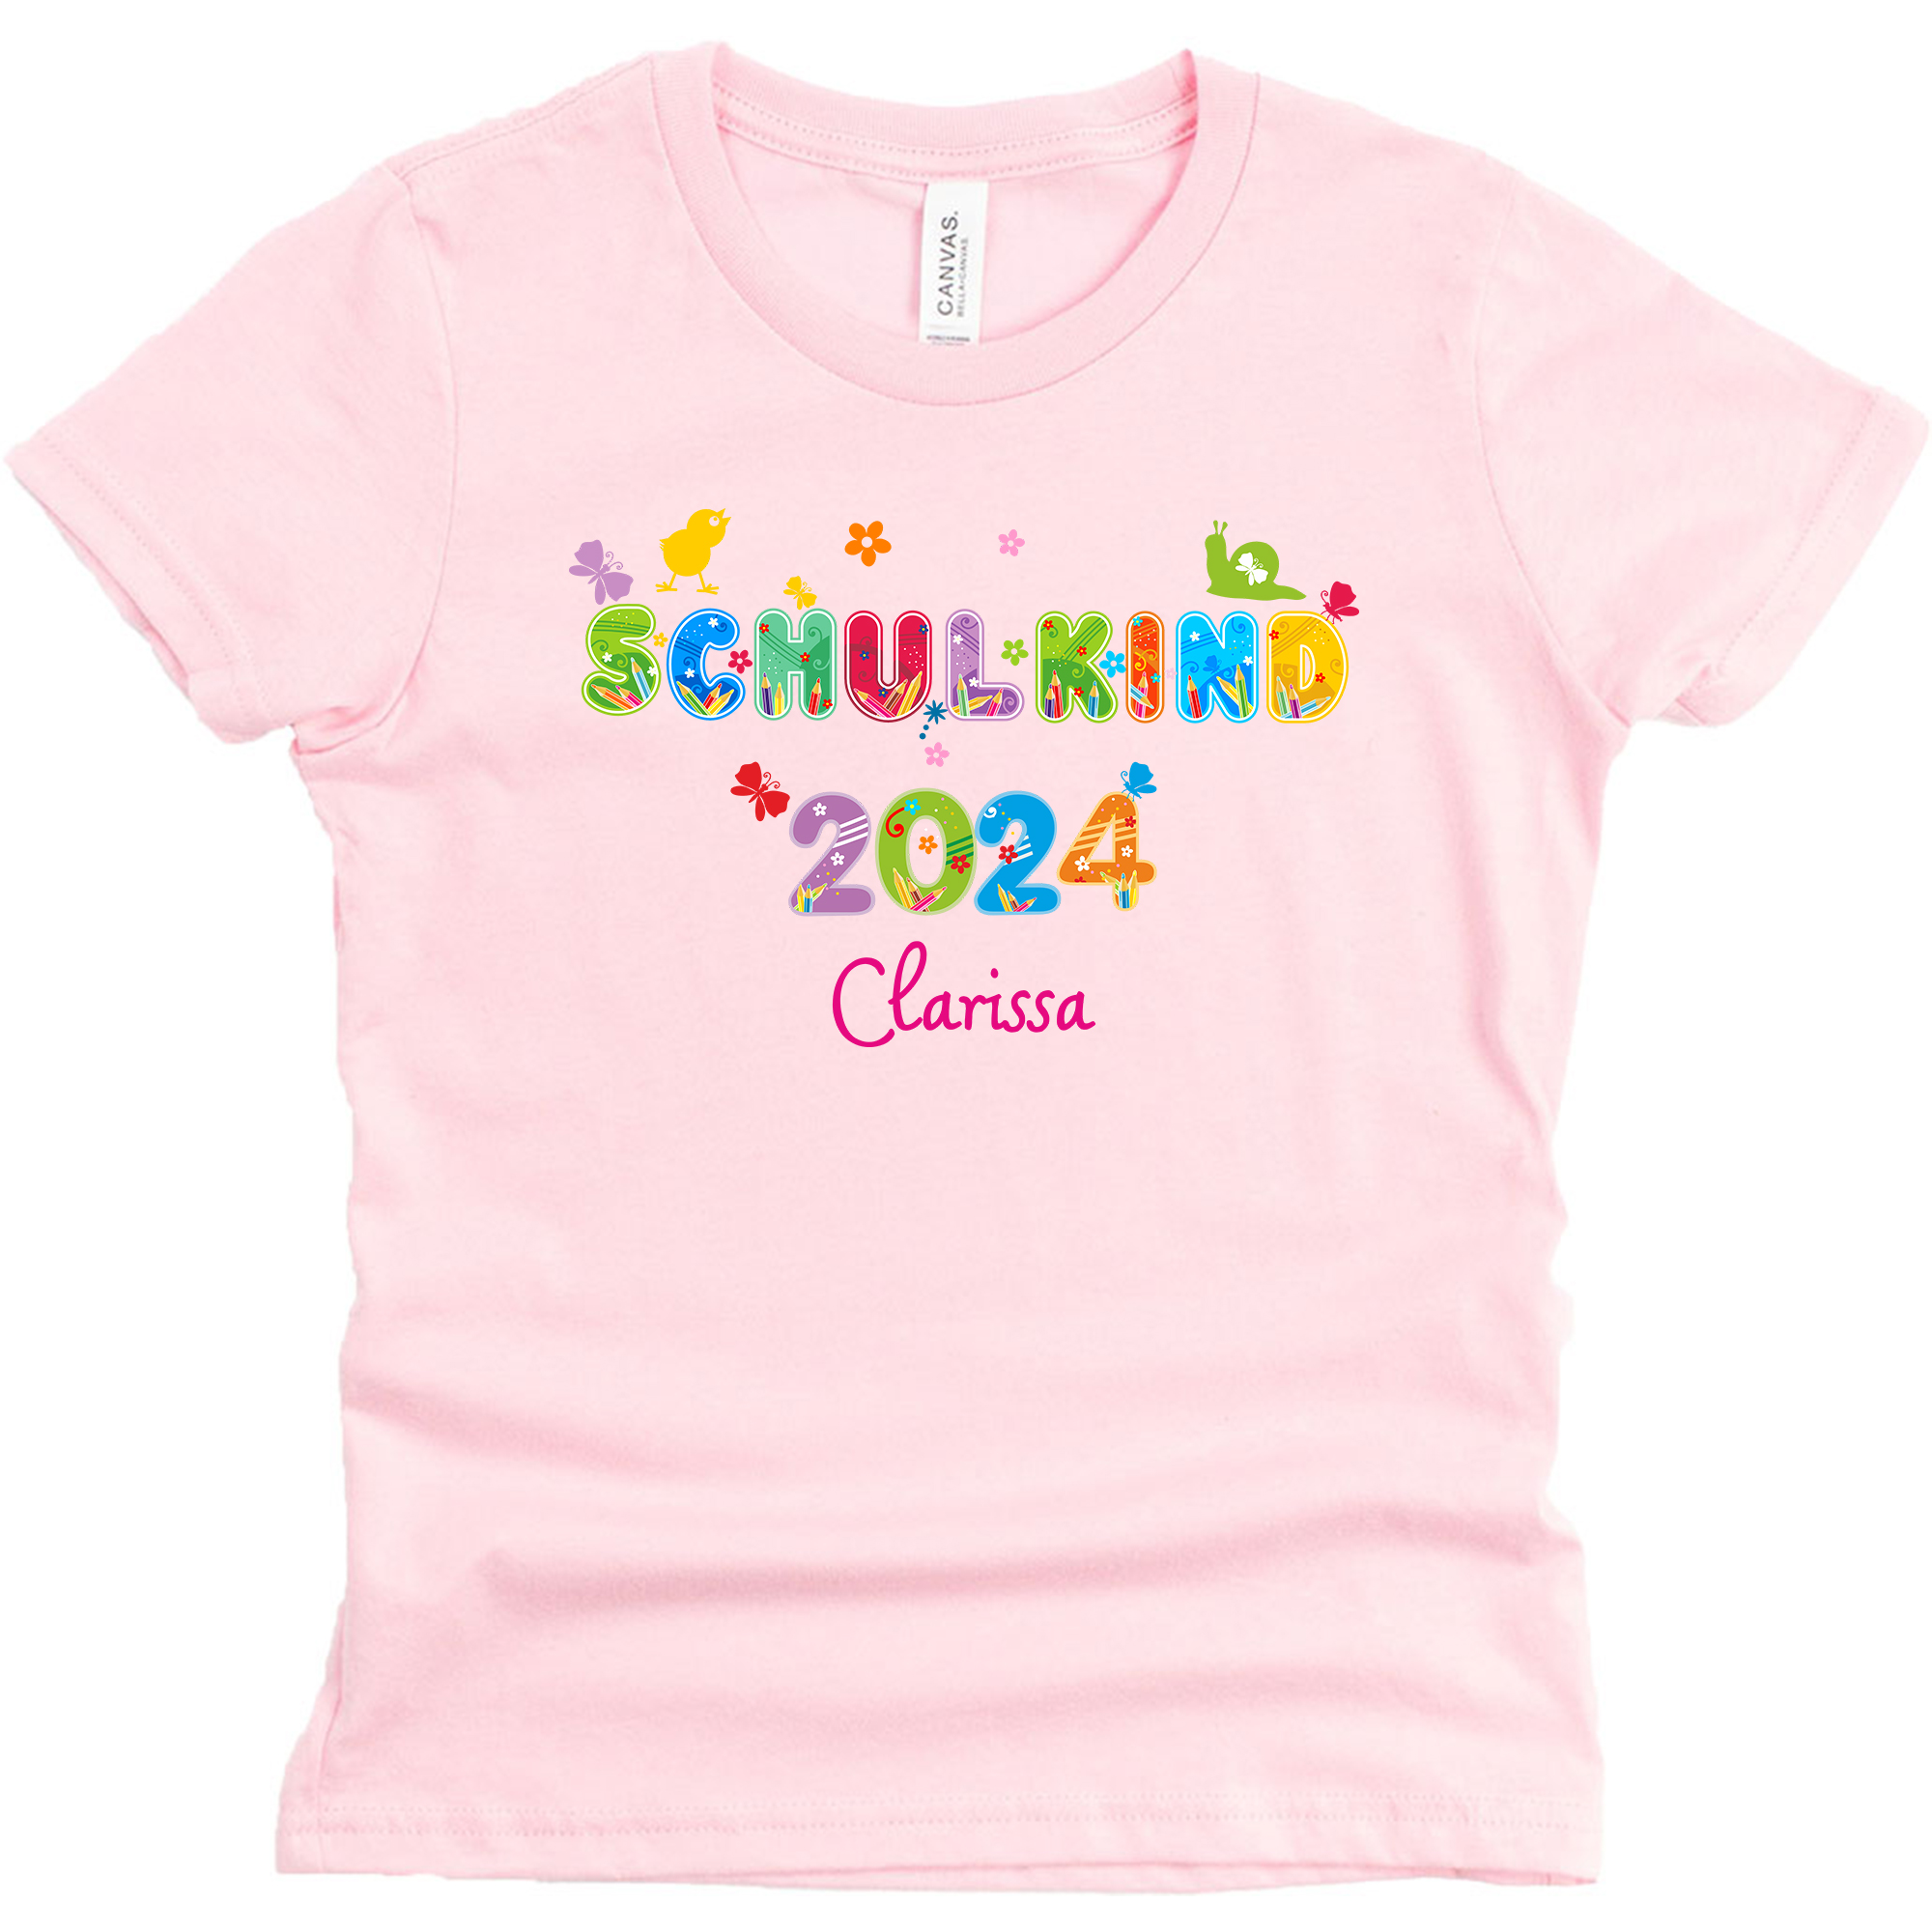 Schulanfangsshirt in rosa mit Name und Motiv Schulkind 2024